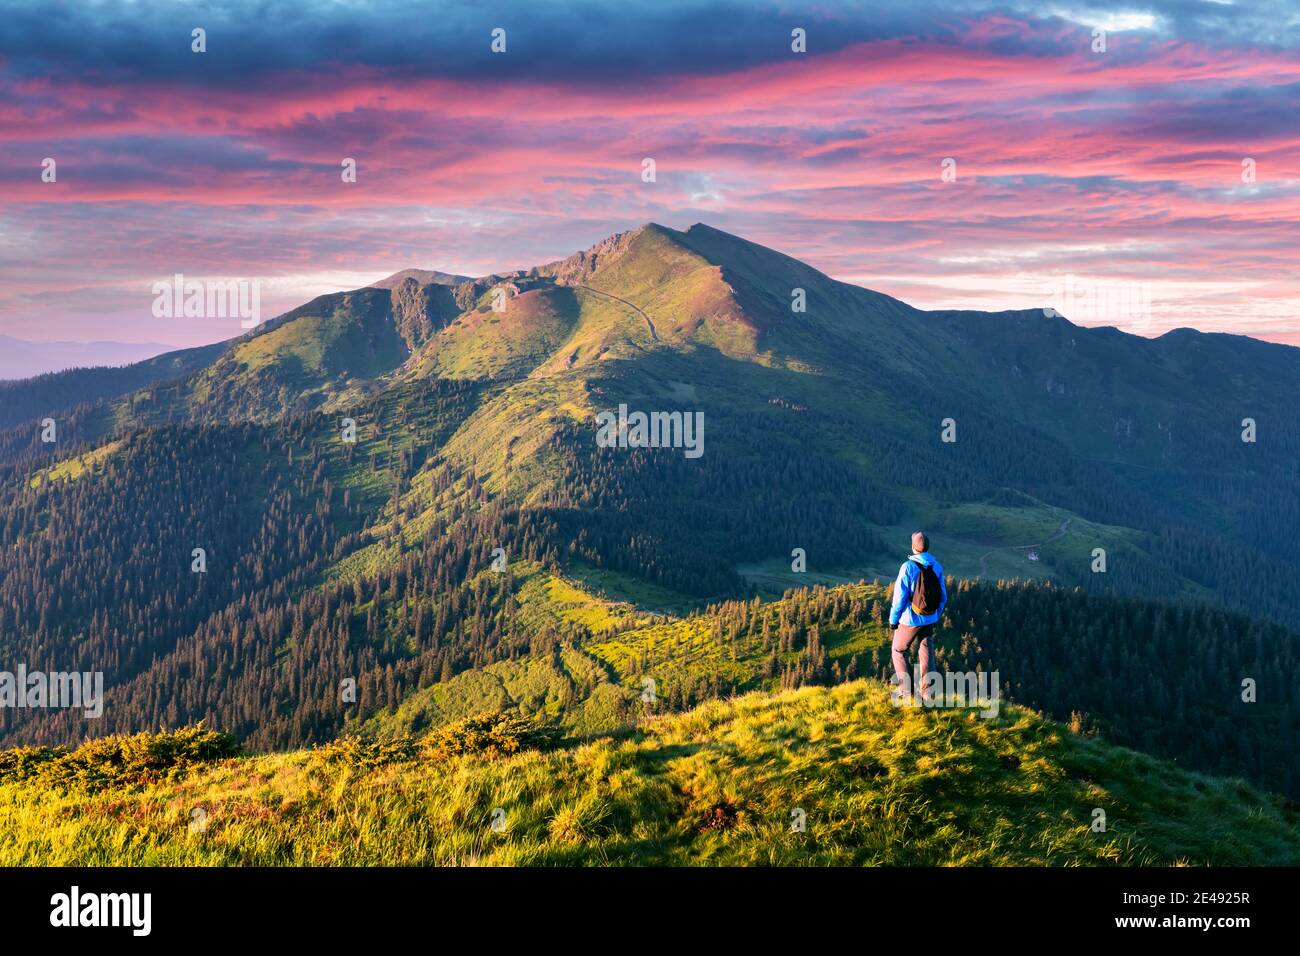 Un touriste au bord d'une montagne couverte d'une herbe luxuriante. Le ciel du coucher de soleil violet et les montagnes de la haute montagne se sommets sur l'arrière-plan. Photographie de paysage Banque D'Images